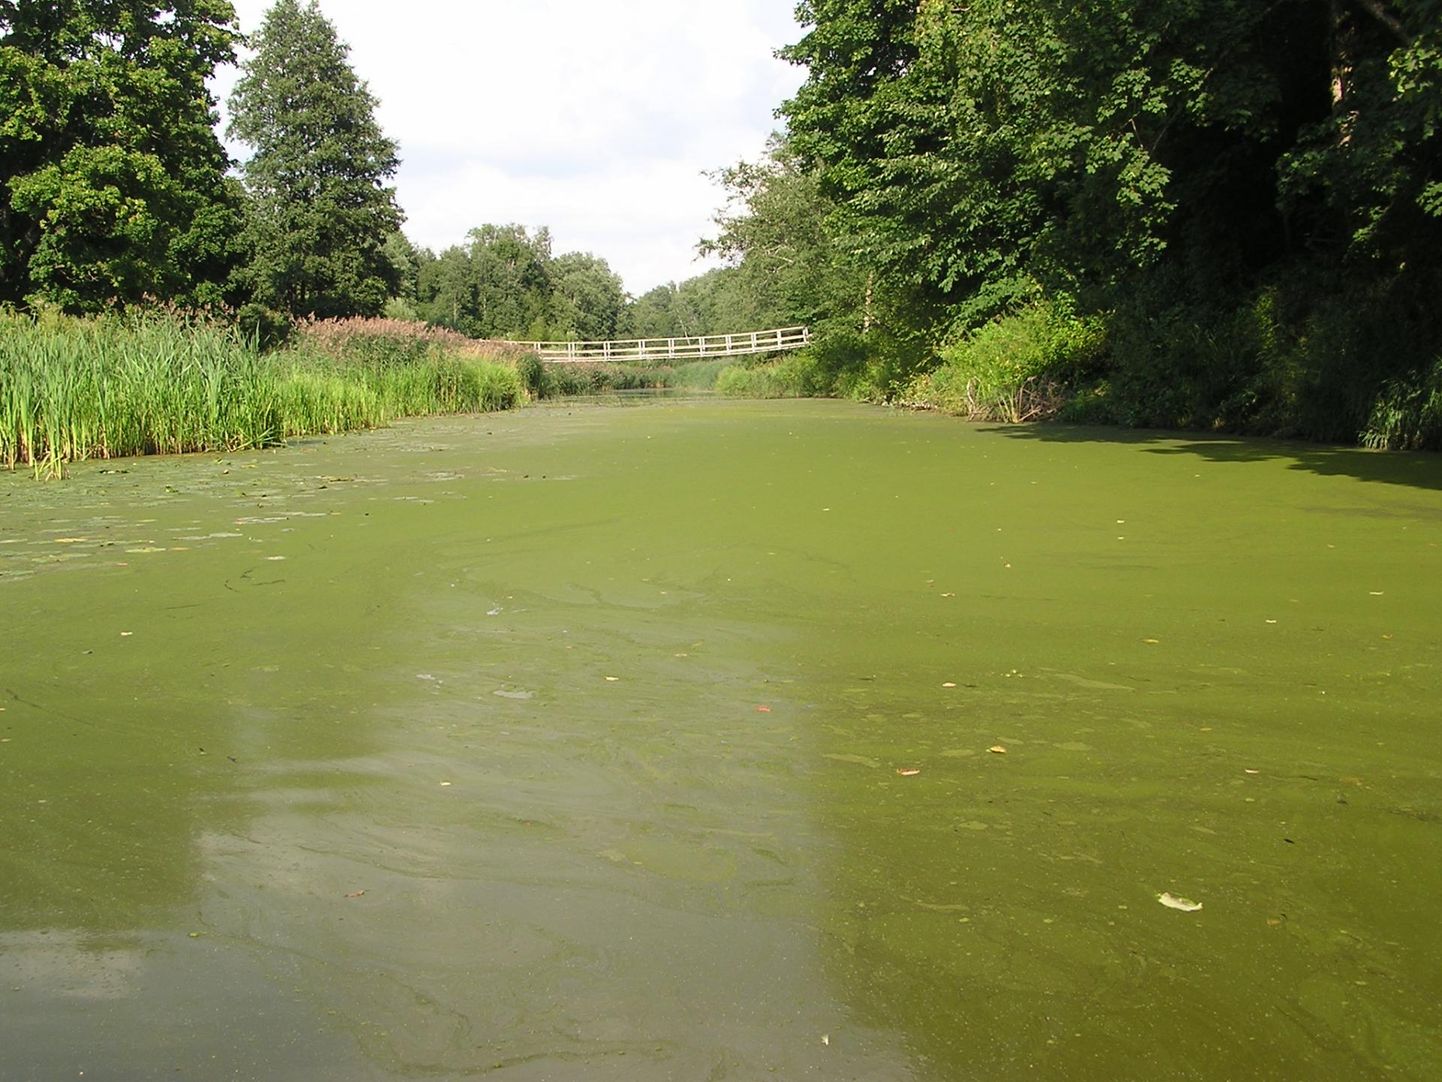 Sauga jõgi on kaetud rohelise kihiga vanast raudteesillast kuni Nurmeni.